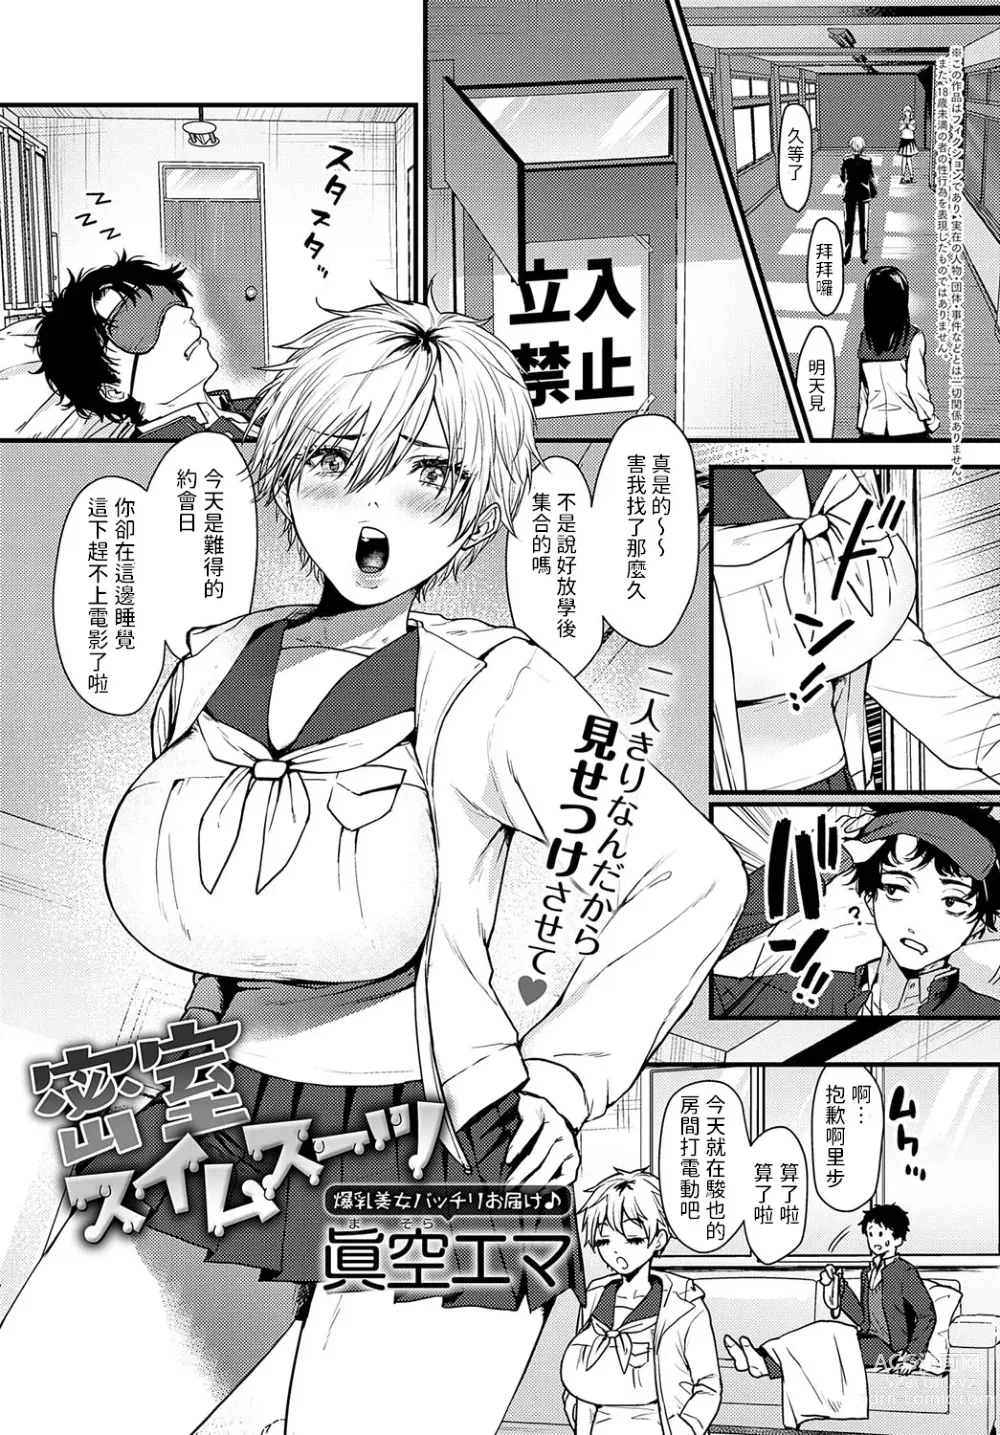 Page 1 of manga Misshitsu Swimsuit